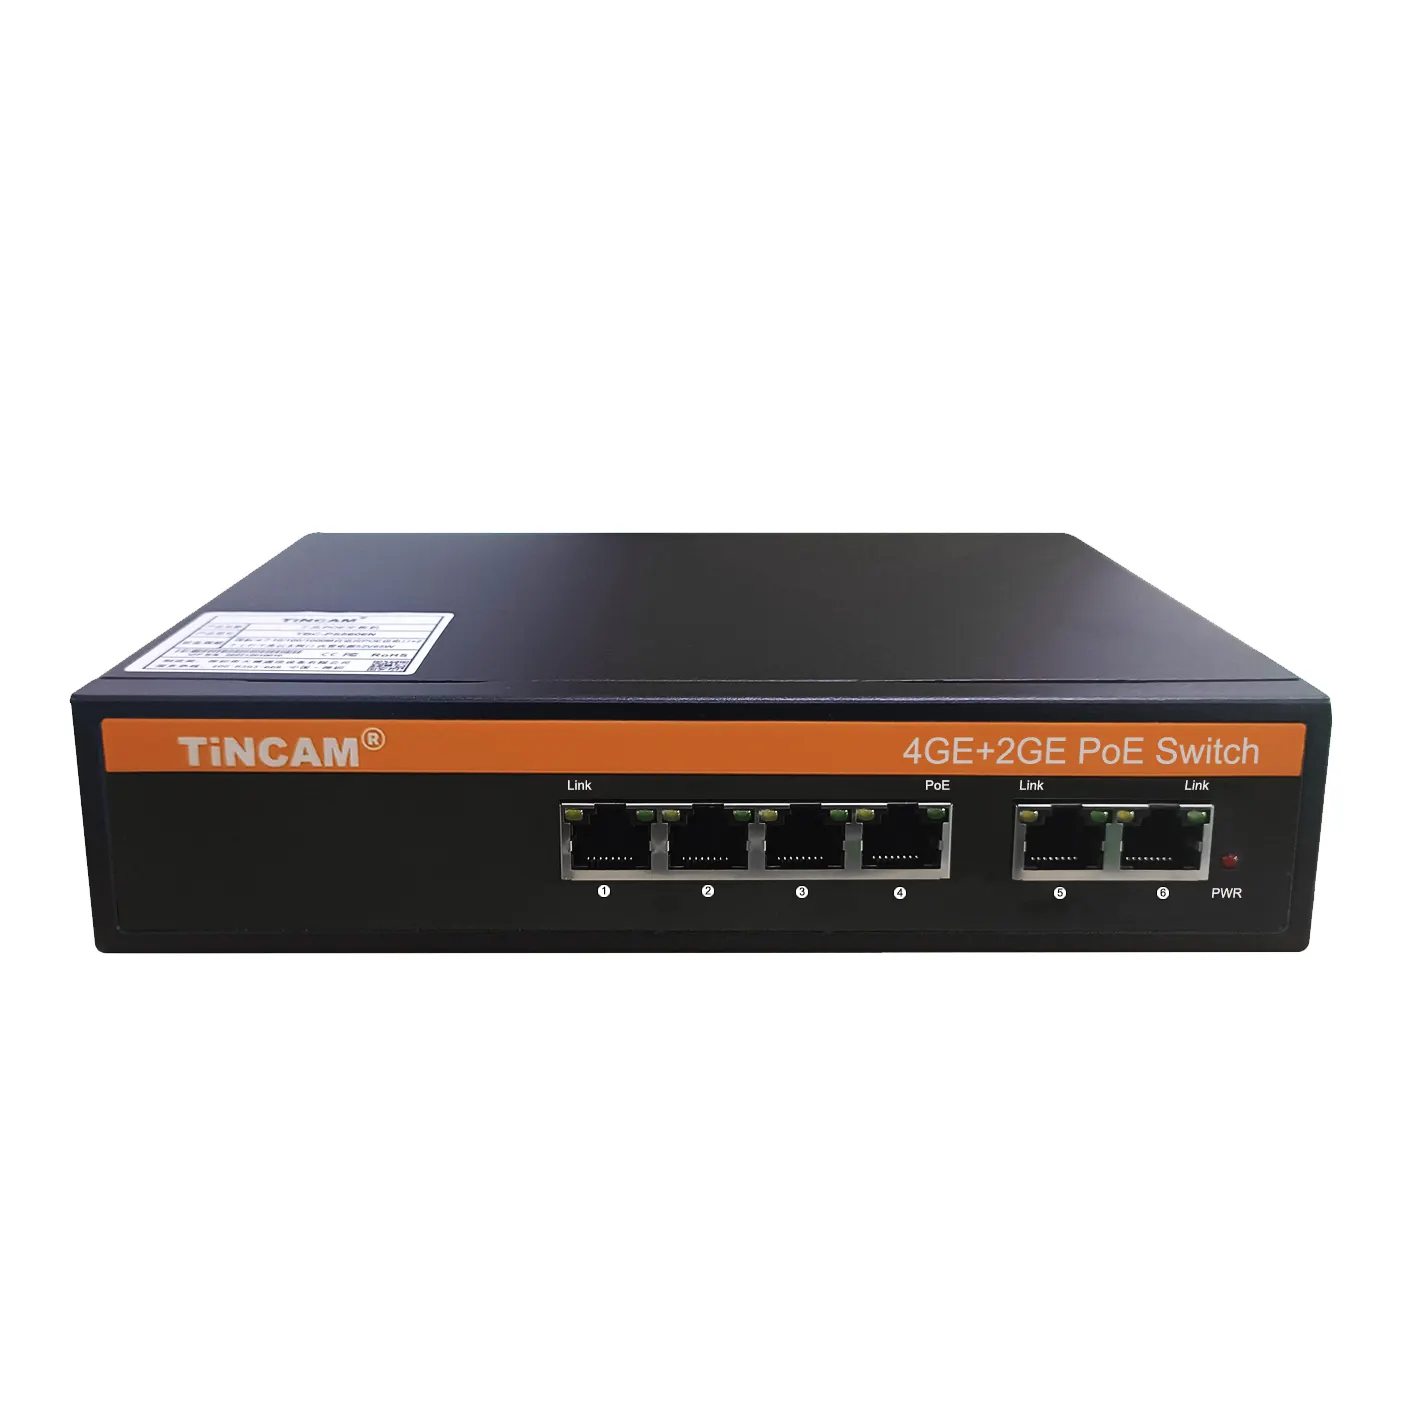 Коммутатор TiNCAM Gigabit Poe 4 * Poe + 2 * Gigabit, оптоволоконный коммутатор Ethernet для домашнего iee802.3at/AF, корпоративный коммутатор